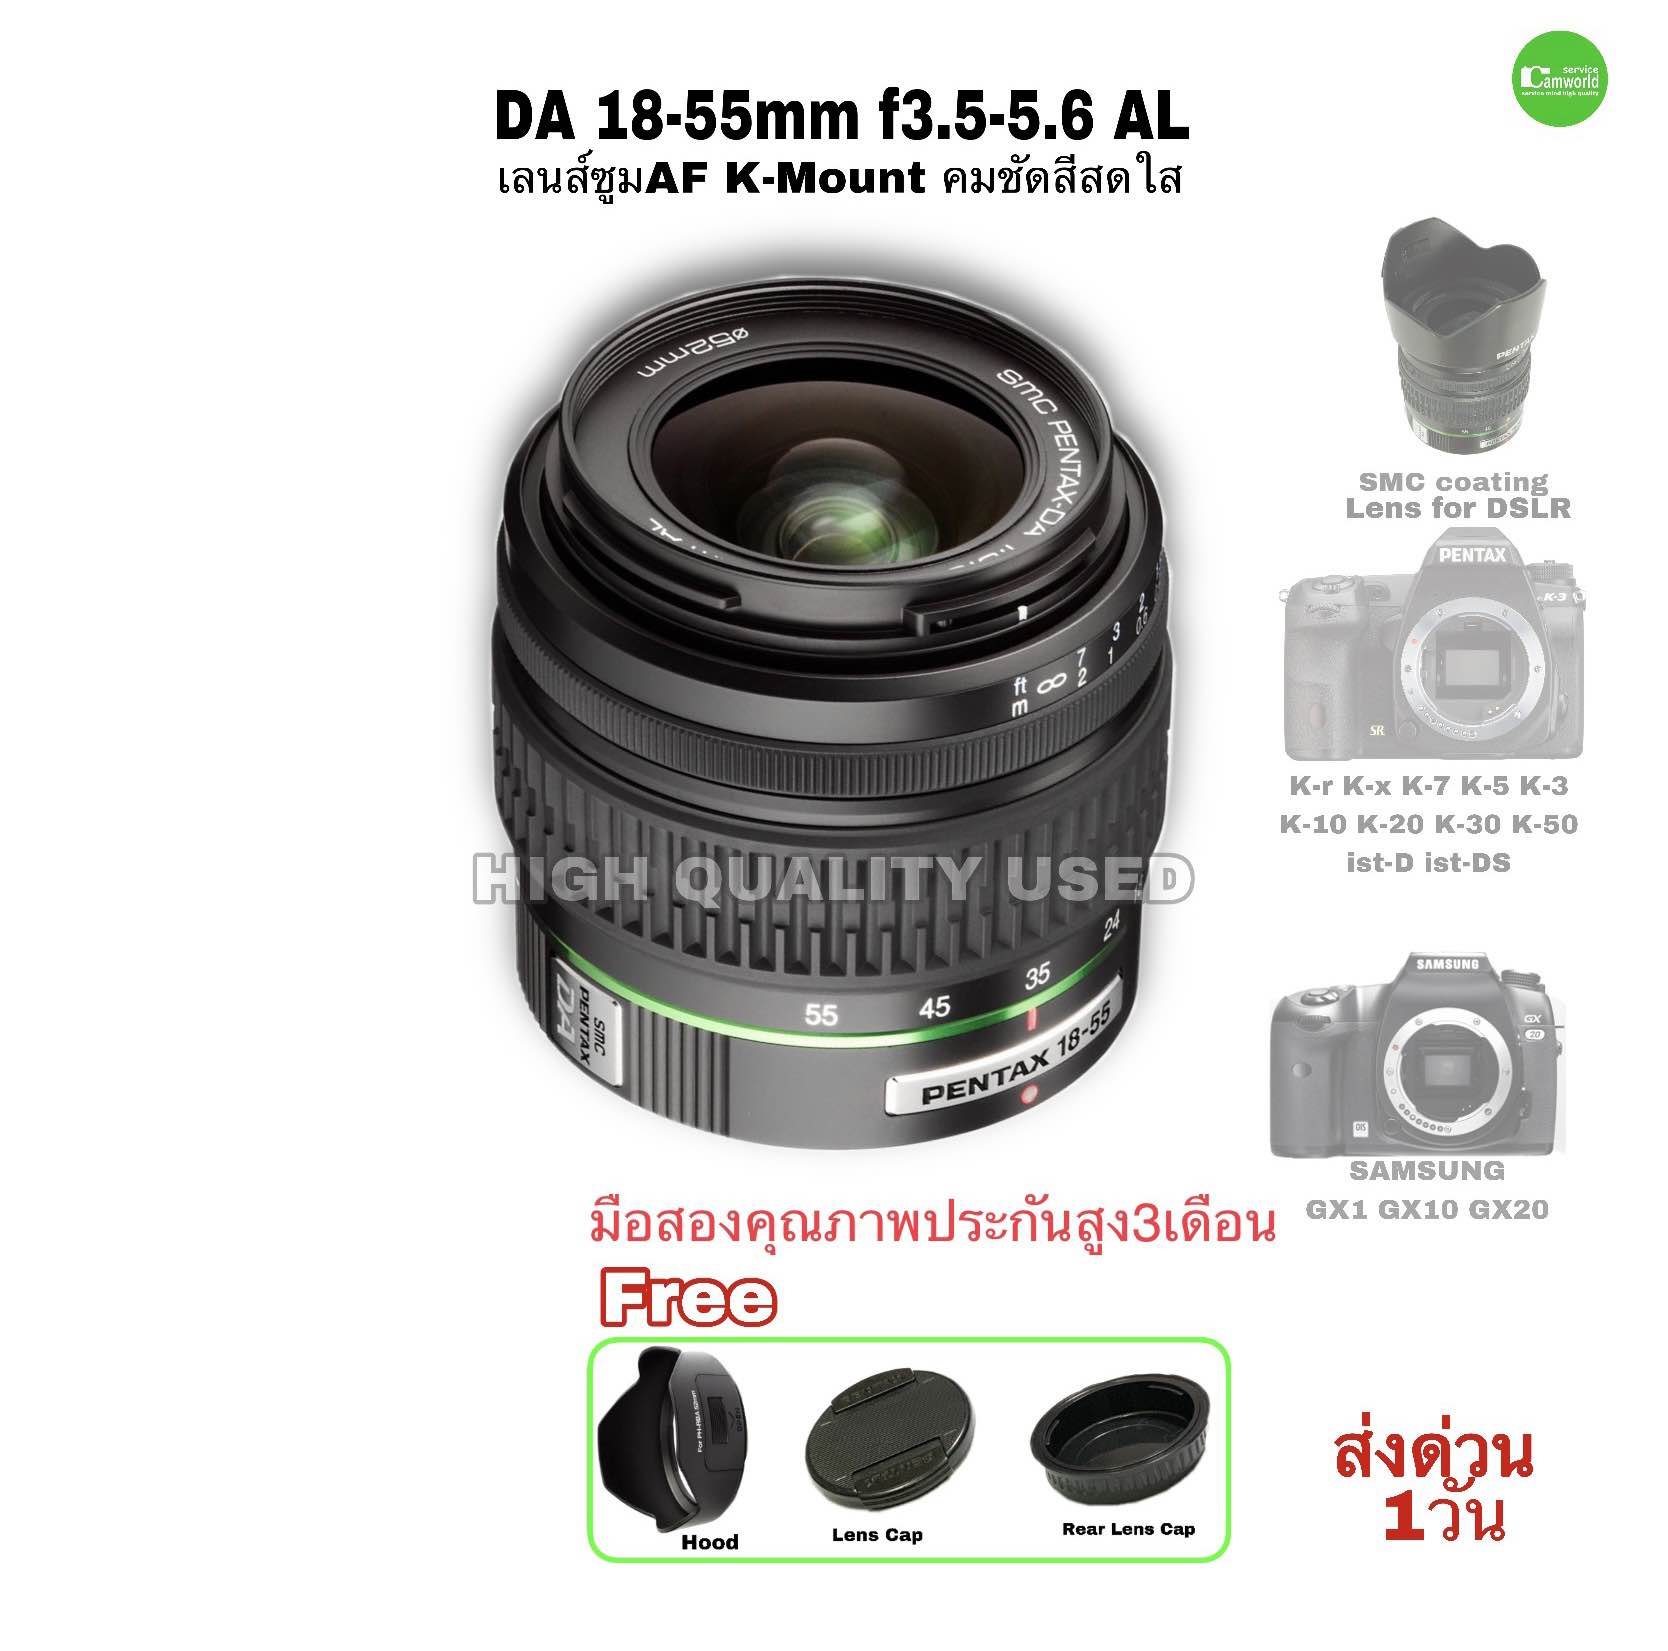 注目ショップ・ブランドのギフト Pentax smc DA 18-55mm f 3.5-5.6 AL WR Zoom Lens 並行輸入品 